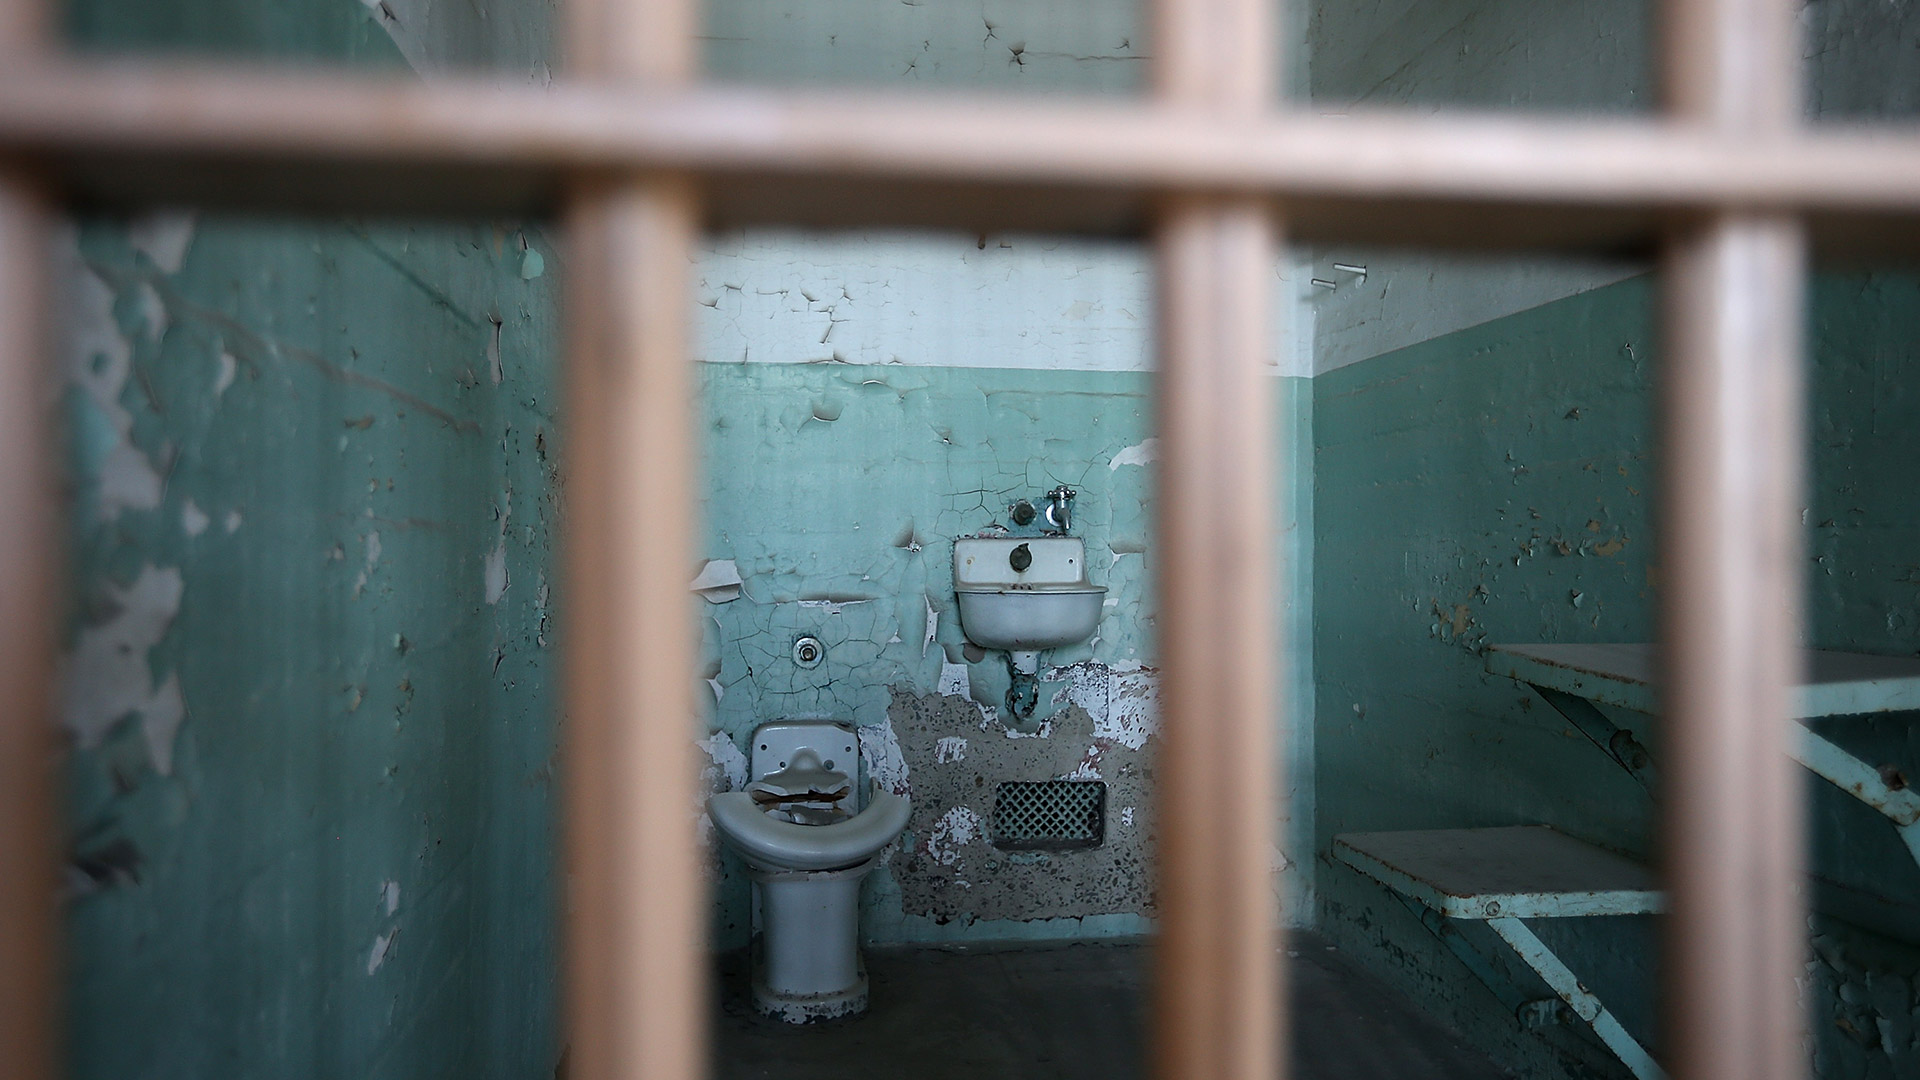 Una de las austeras celdas por dentro. Los detenidos no tenían beneficios ni comodidades (Justin Sullivan/Getty Images)